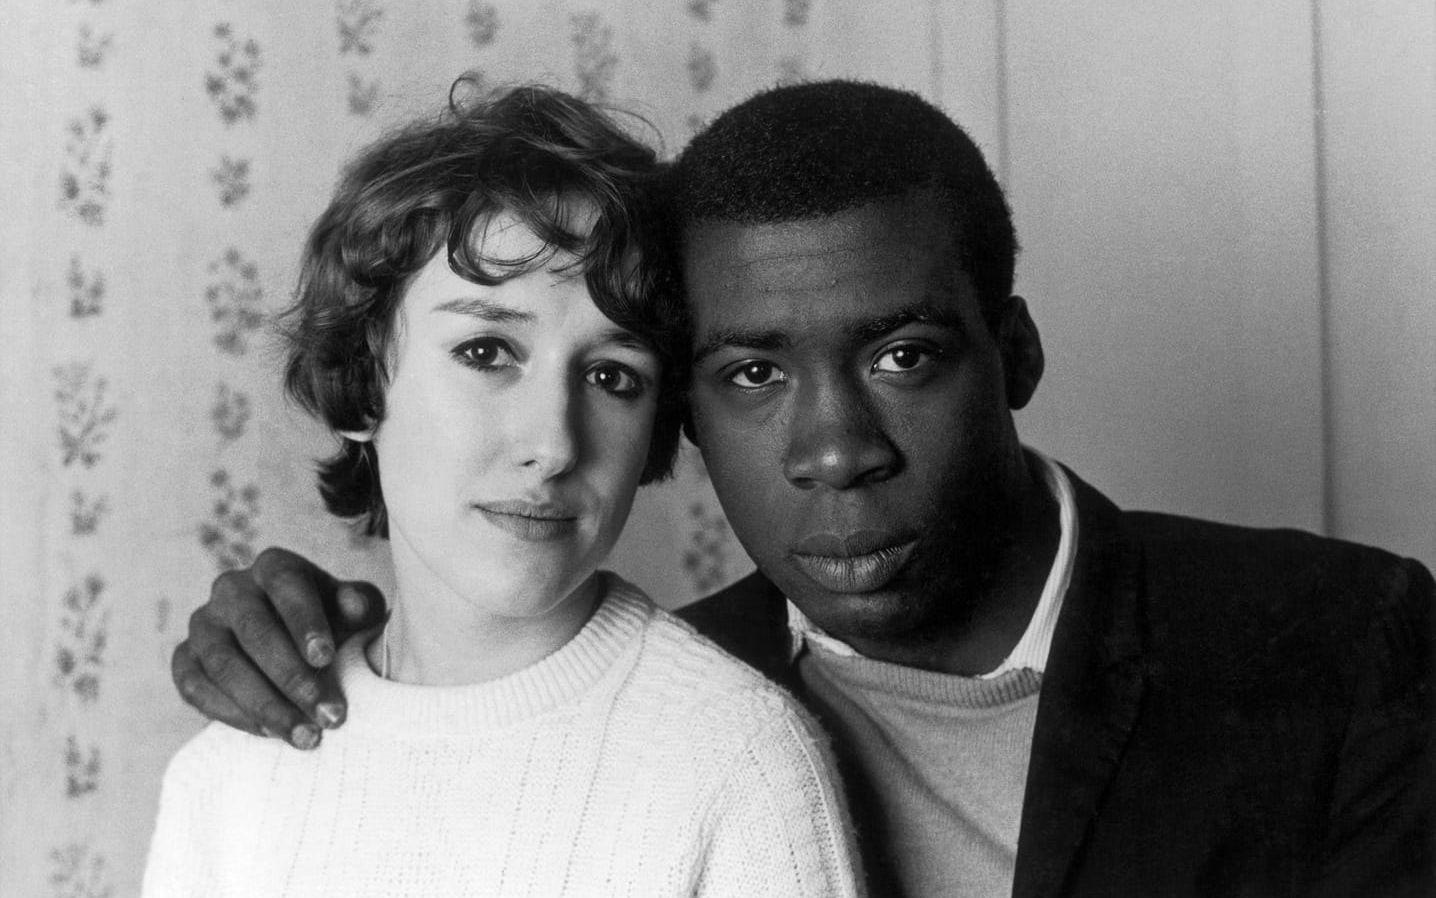 Fotot ”Notting Hill Couple” från 1967 av Charlie Phillips. 